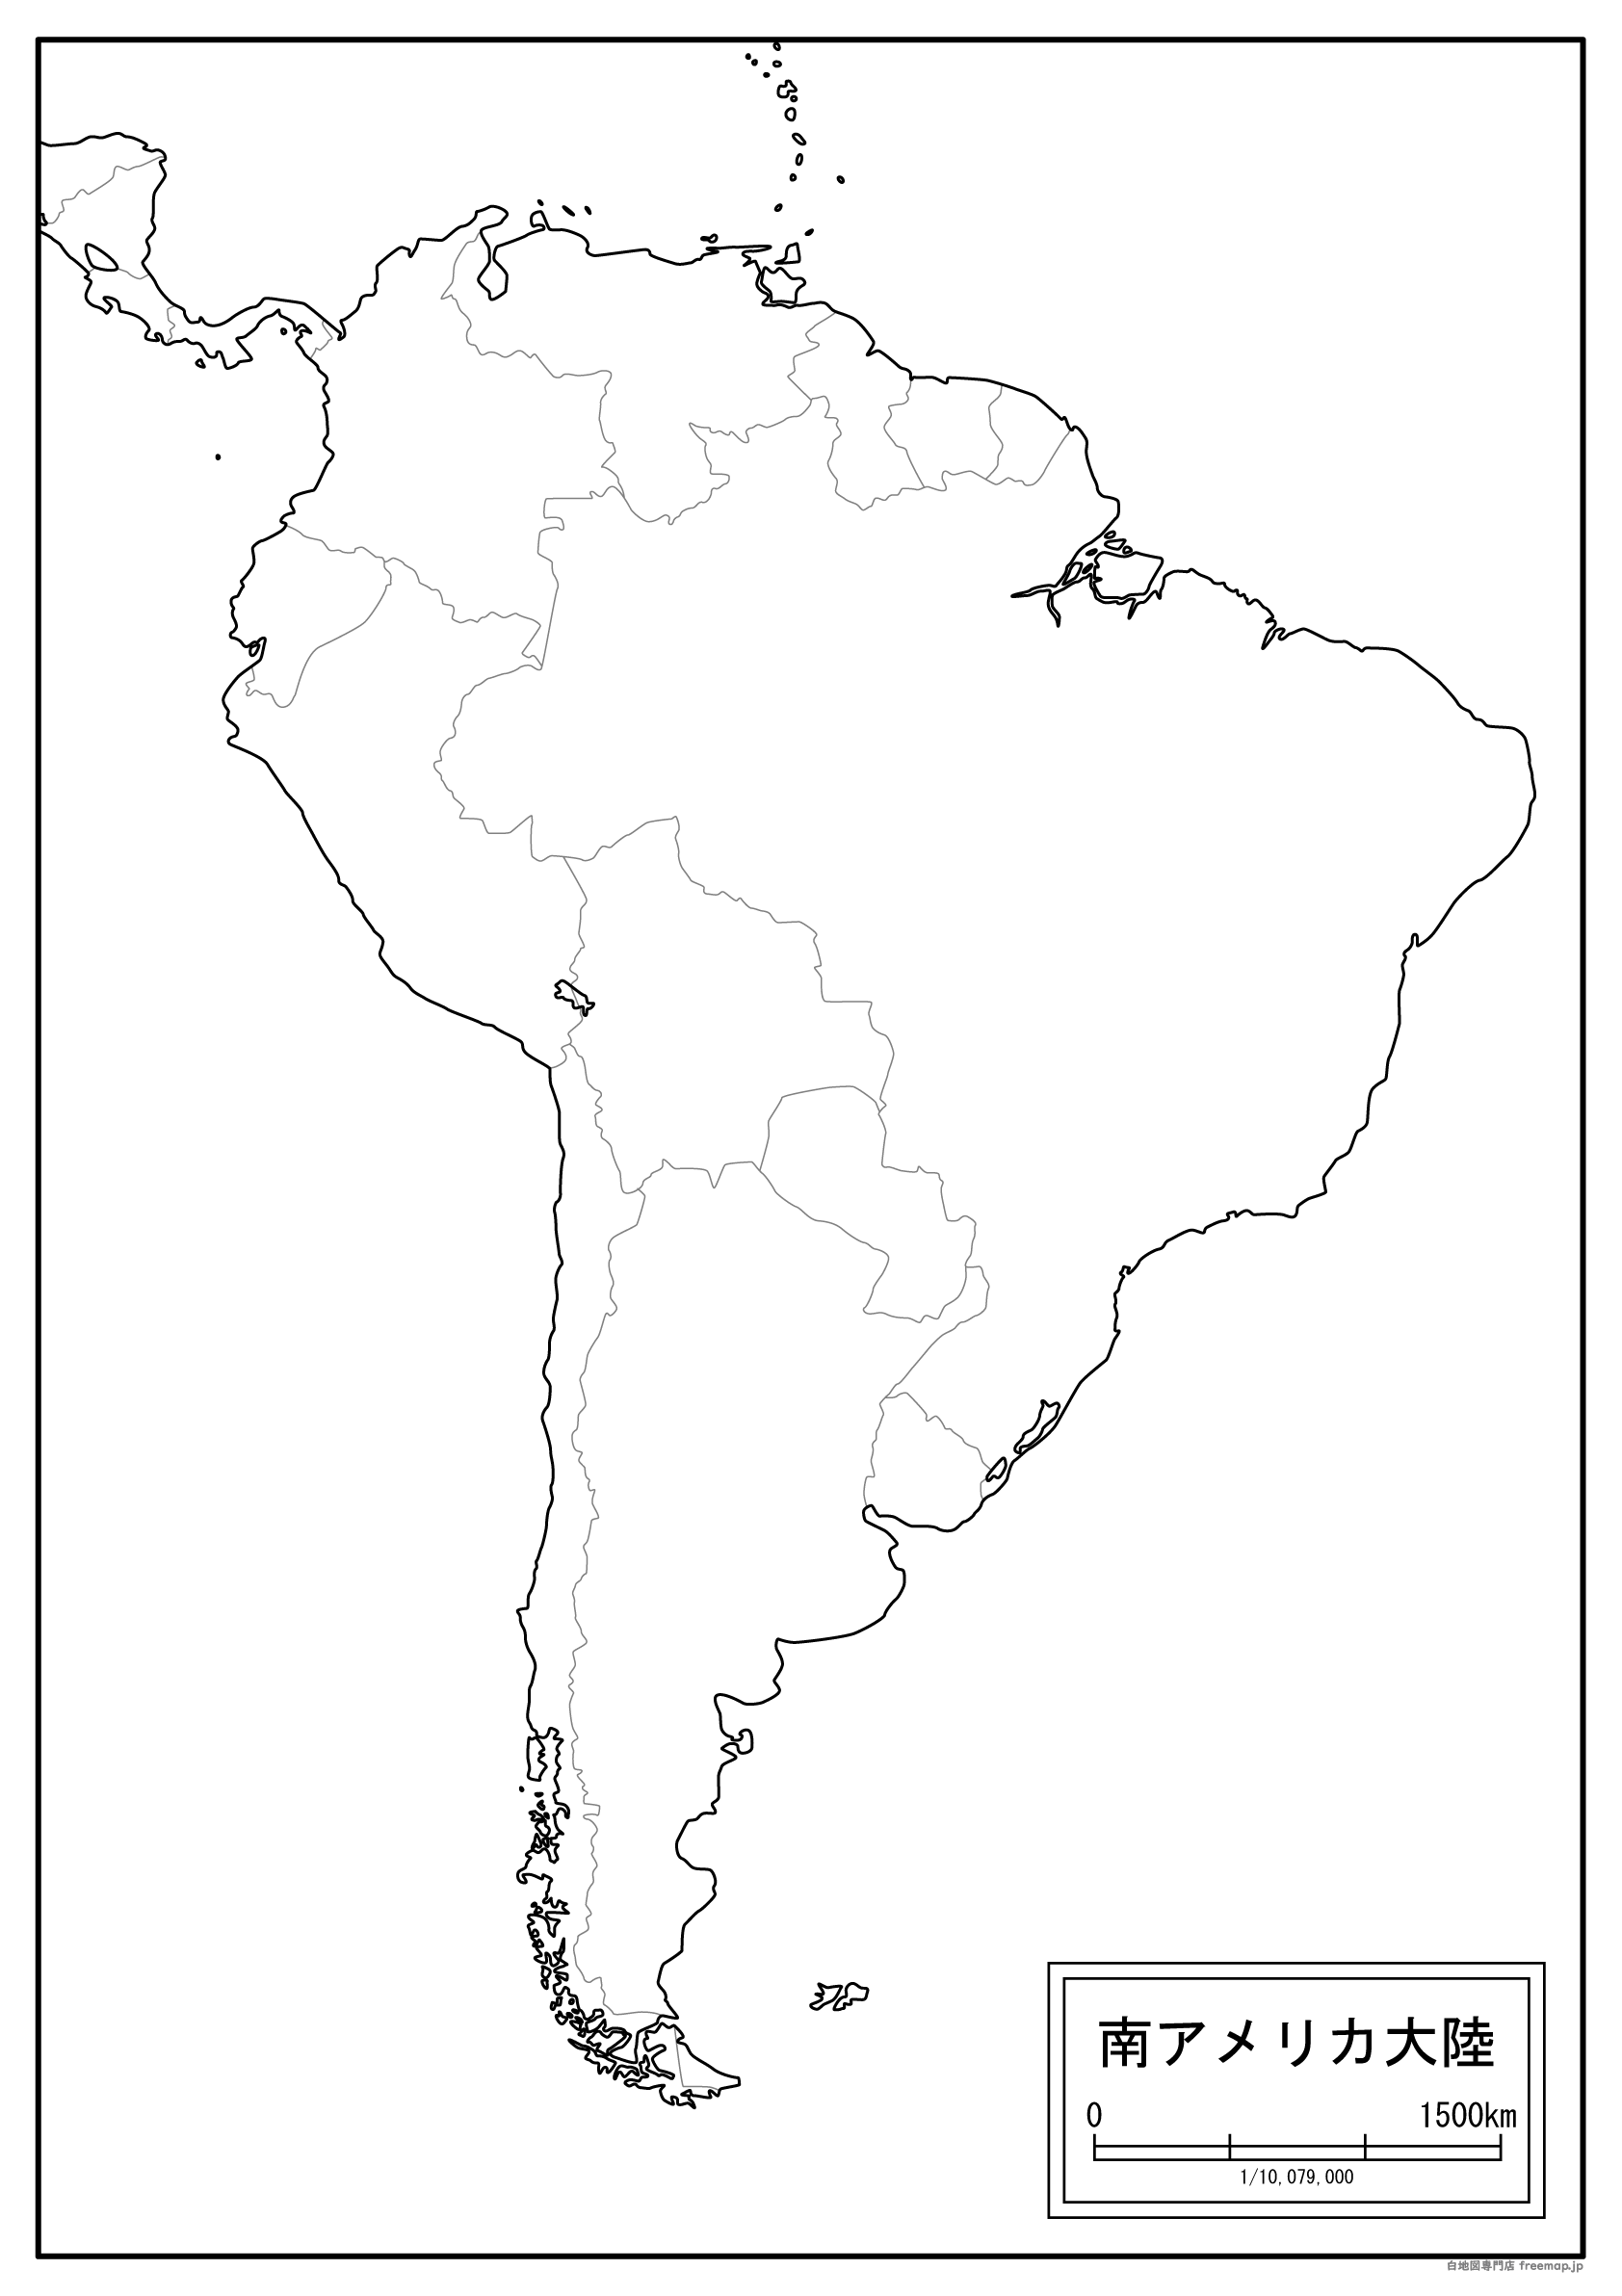 【白地図】南アメリカ大陸